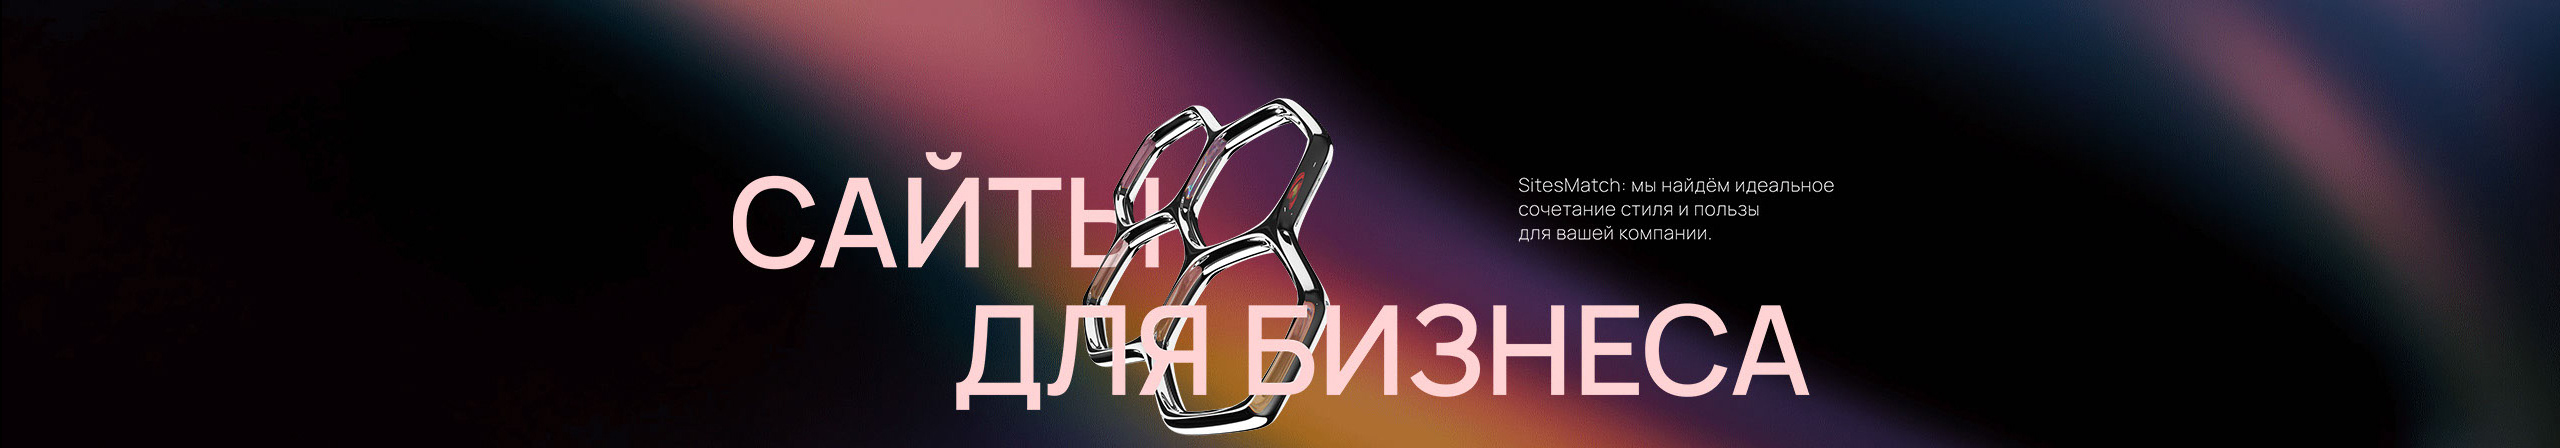 Profil-Banner von Илья Черняев